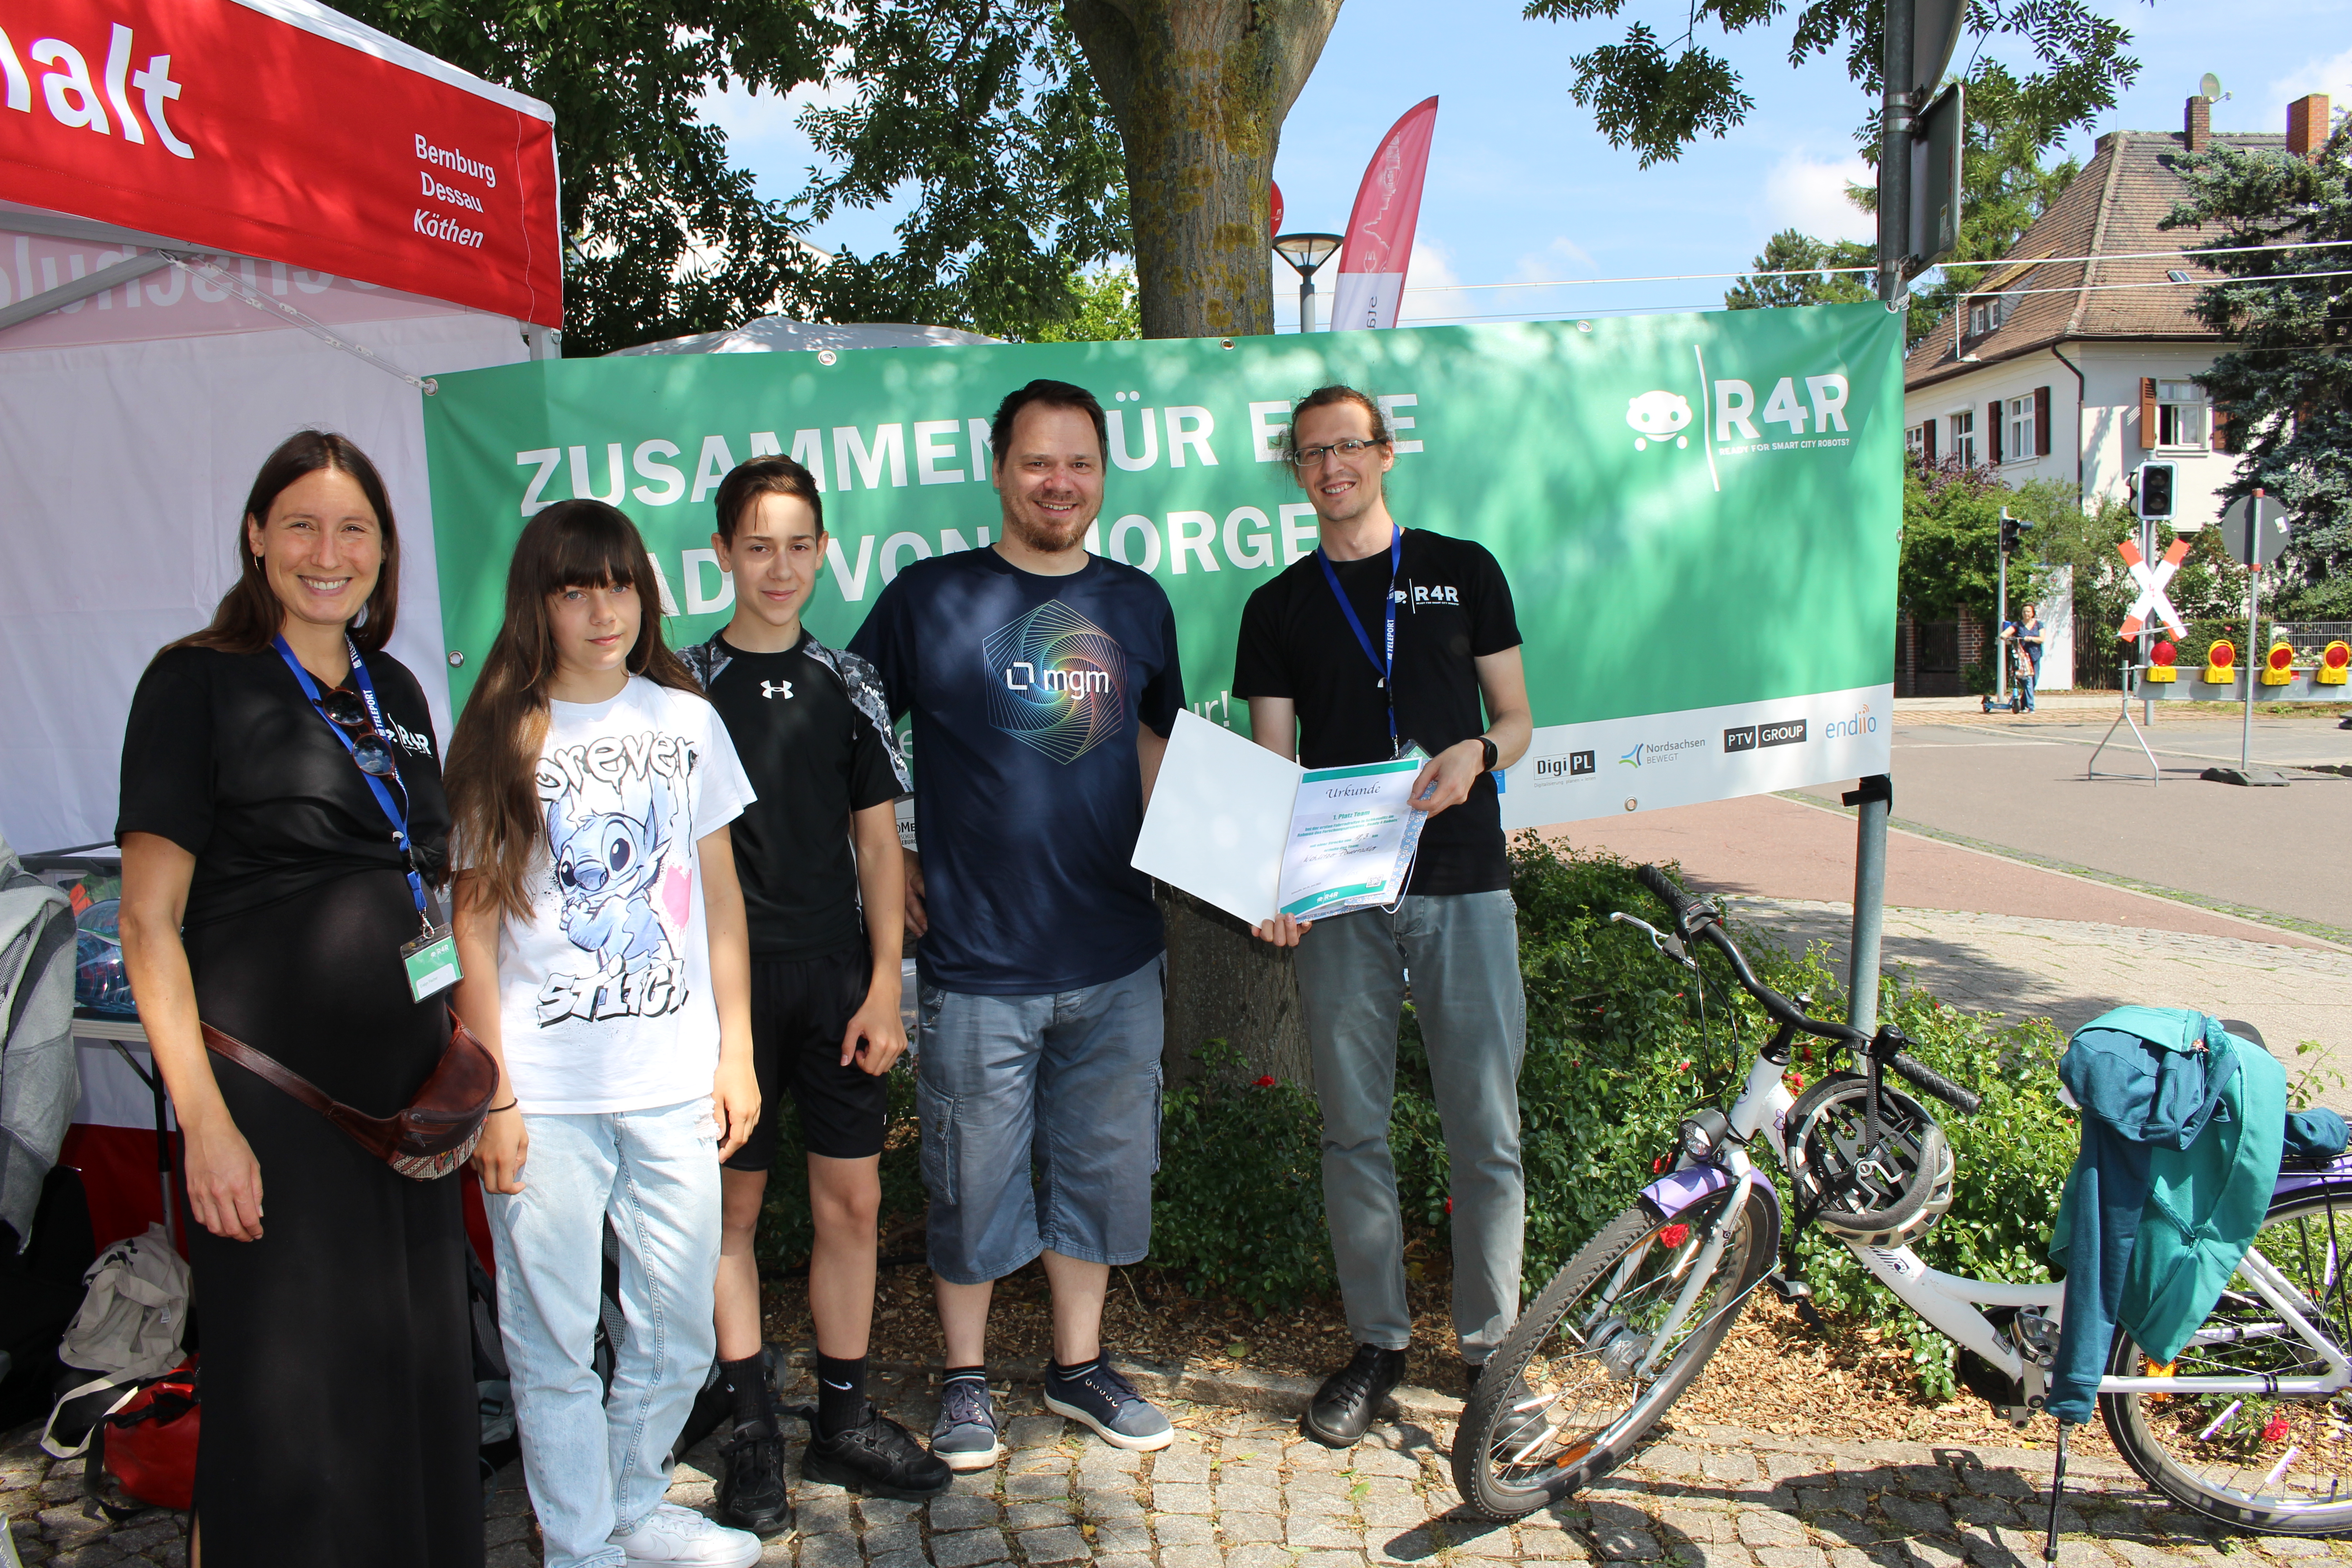 Siegerfamilie der R4R-Fahrradrallye in Schkeuditz